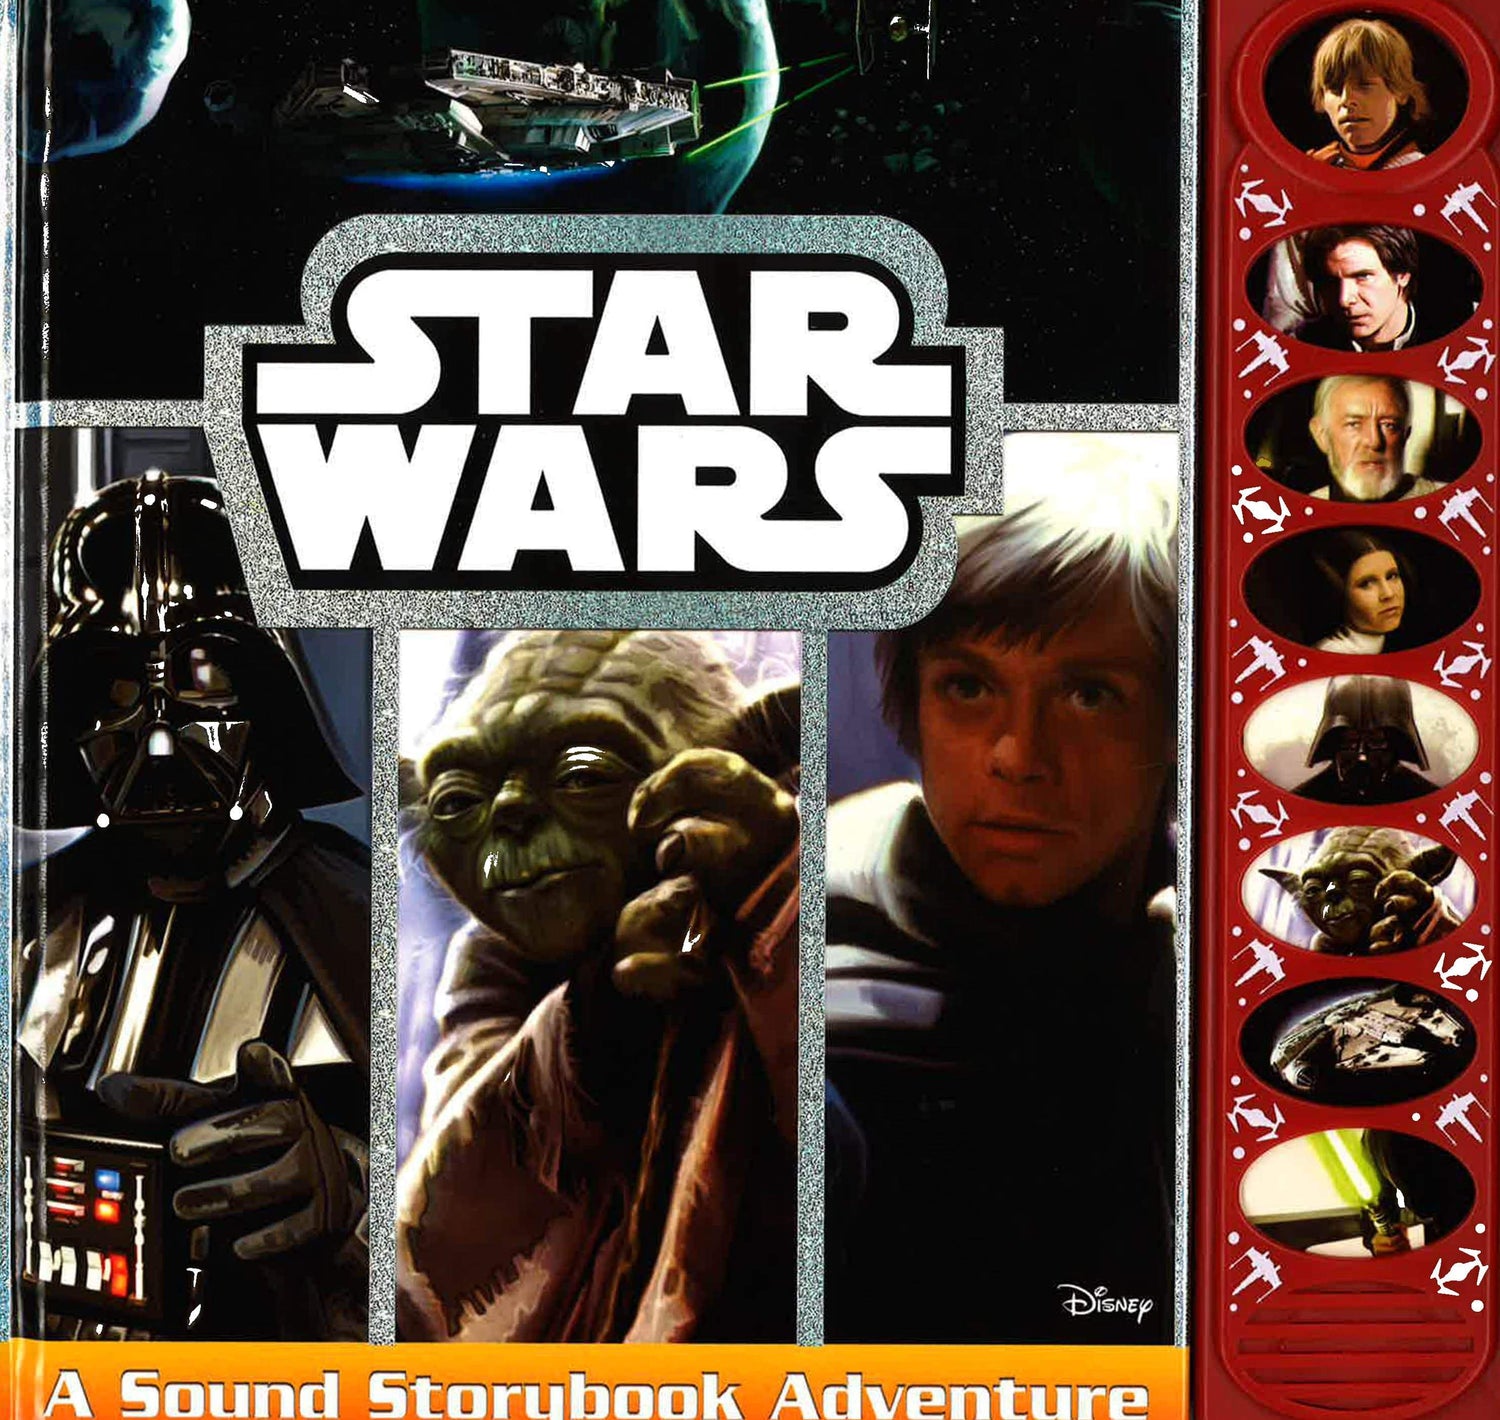 Star Wars: A Sound Storybook Adventure